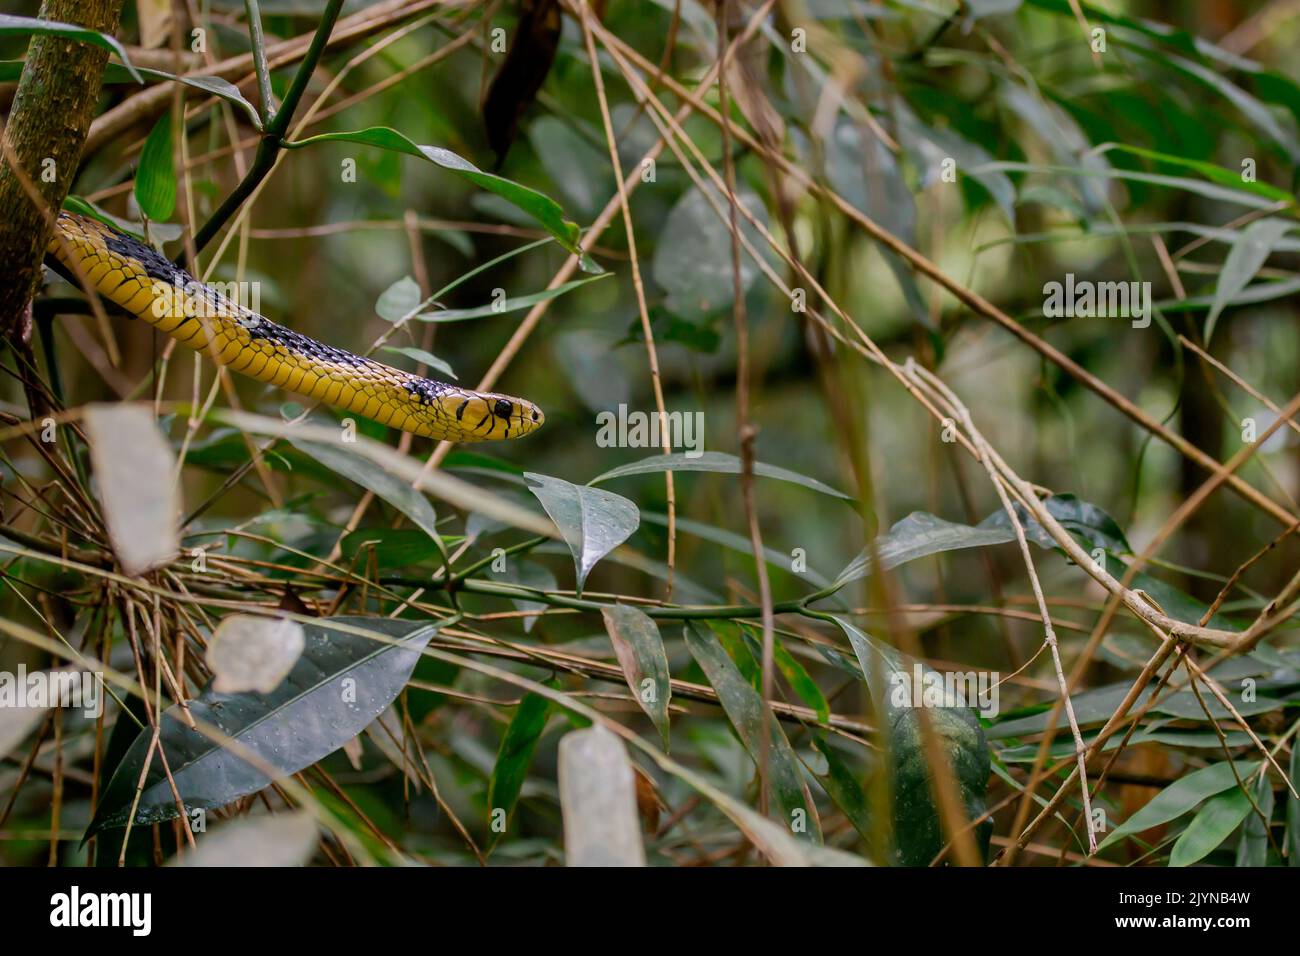 Caninana (Spilotes pullatus), Atlantischer Wald, Ilhabela, Bundesstaat Sao Paulo, Brasilien Stockfoto